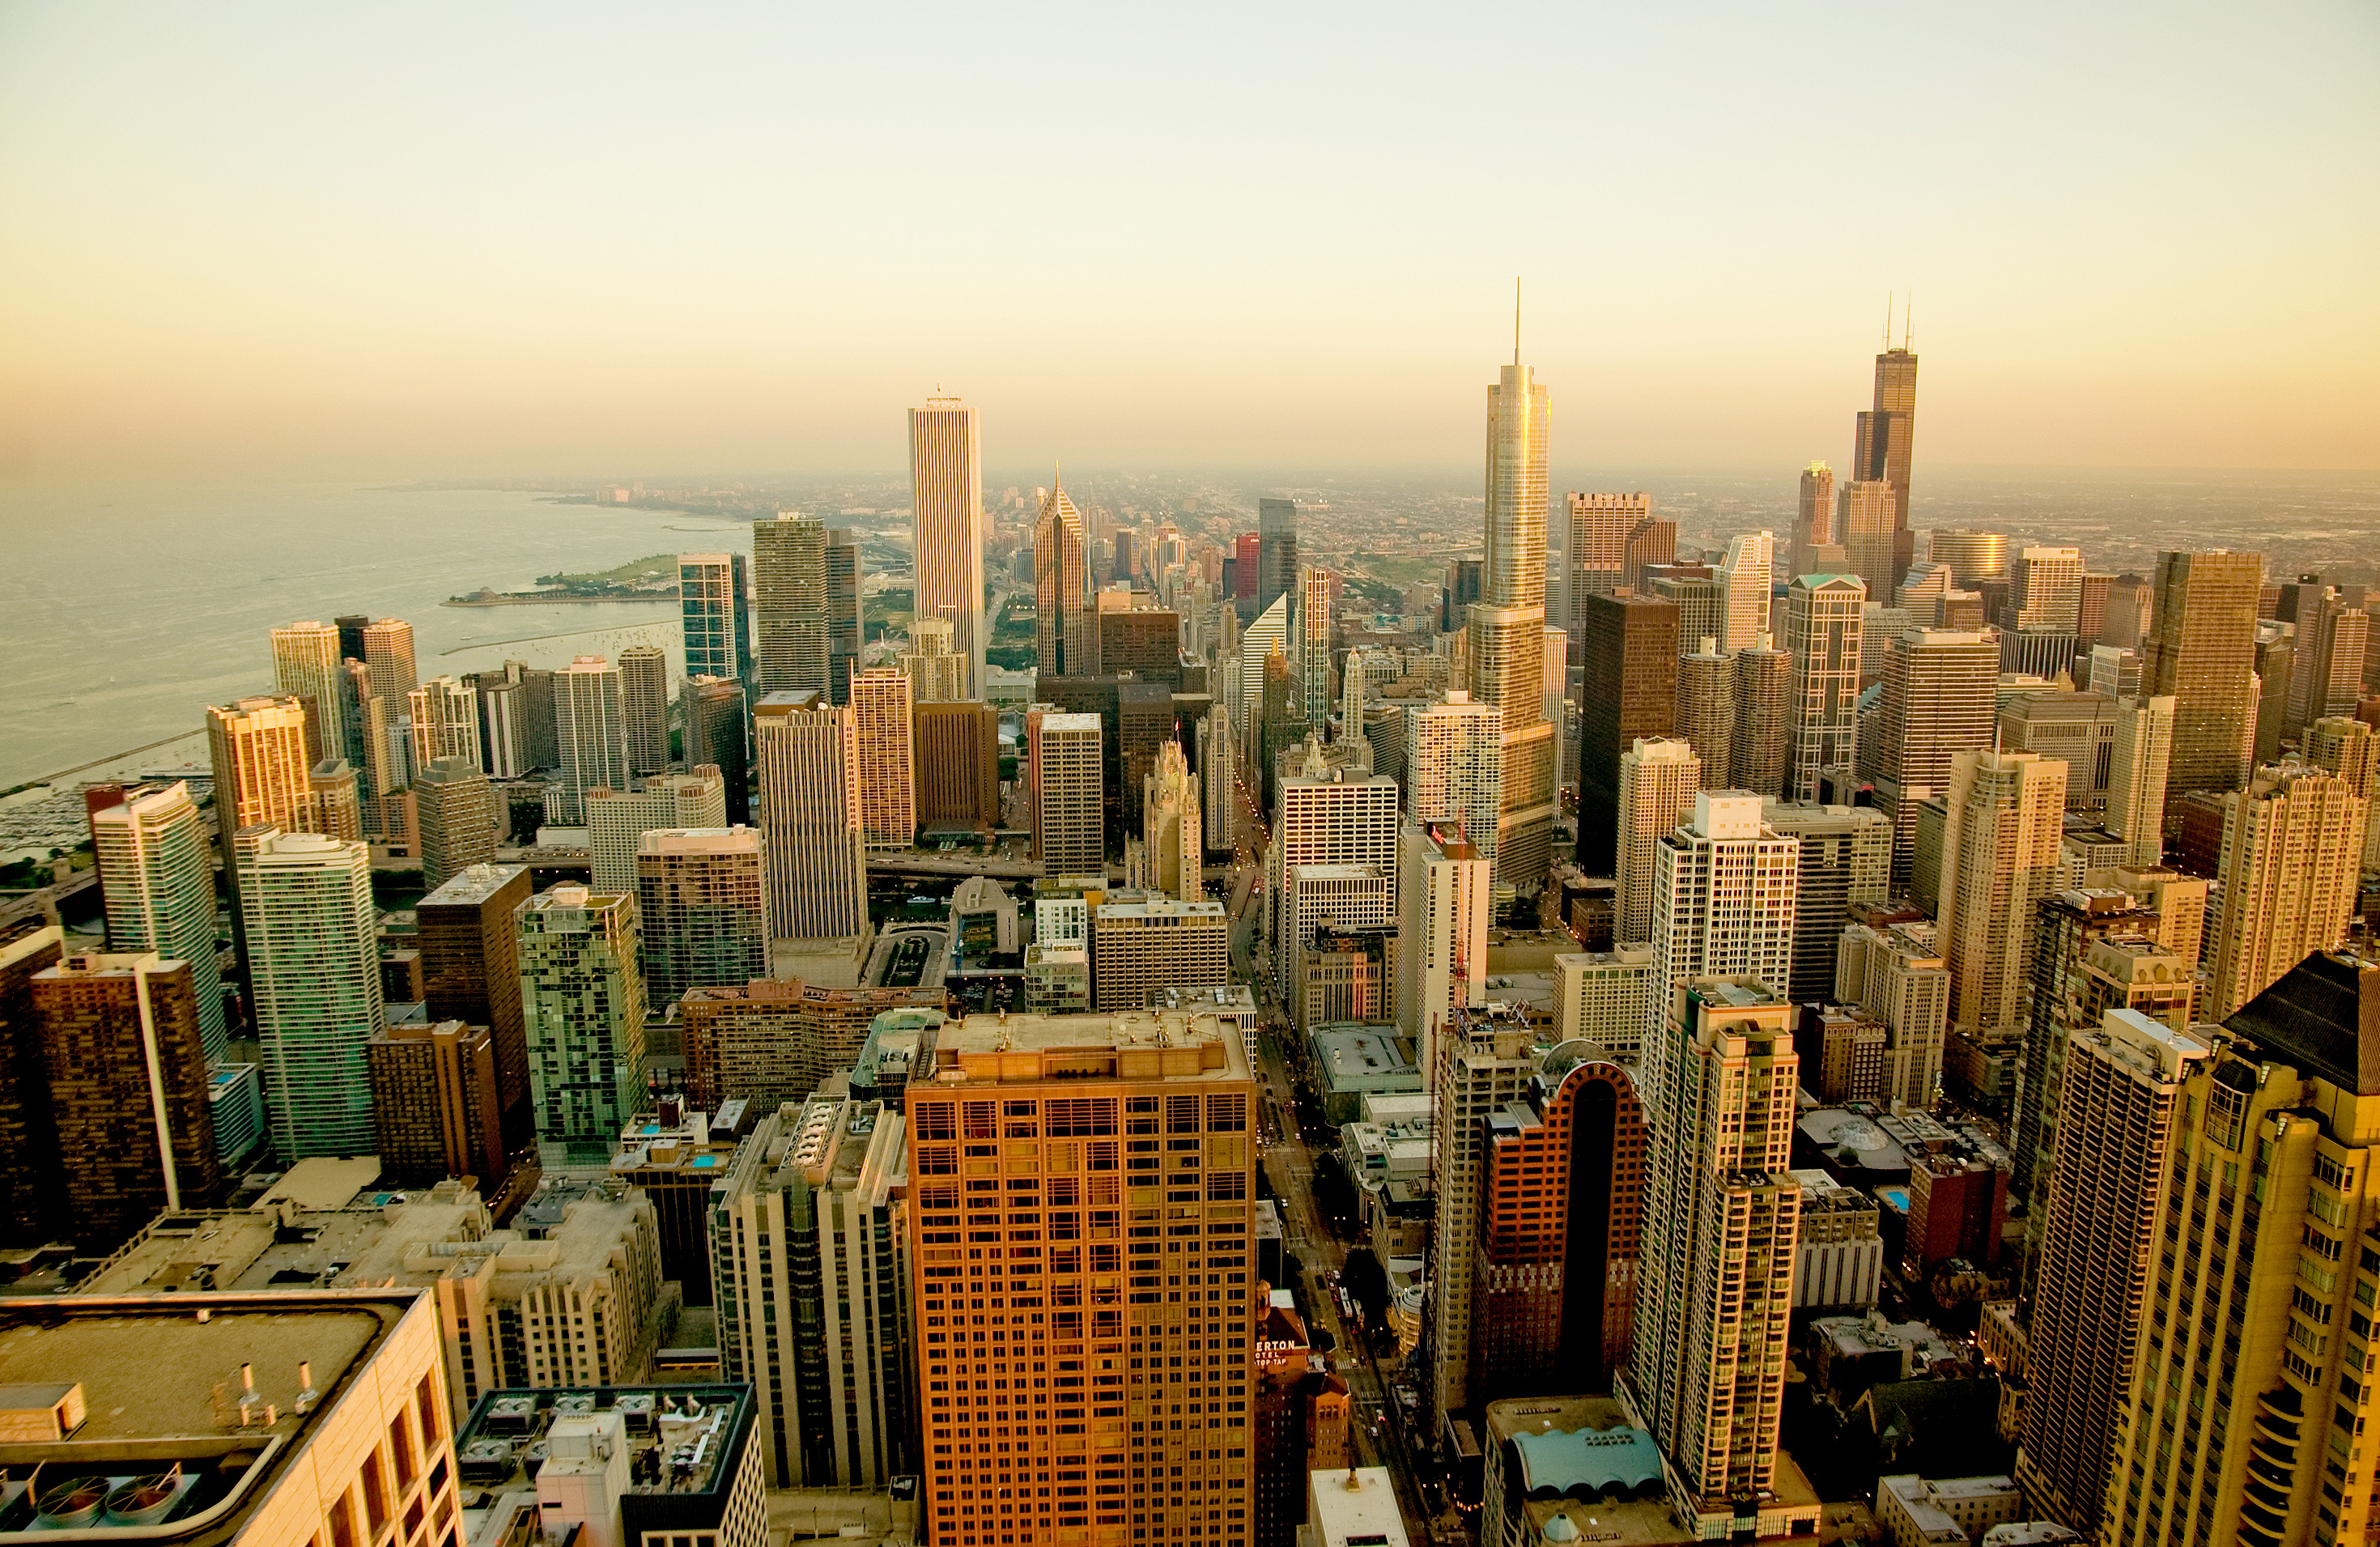 Vid na. Чикаго (Иллинойс) небоскребы. Чикаго (Иллинойс) вид сверху. Мегаполис Чикаго. Мегаполисы США И города.